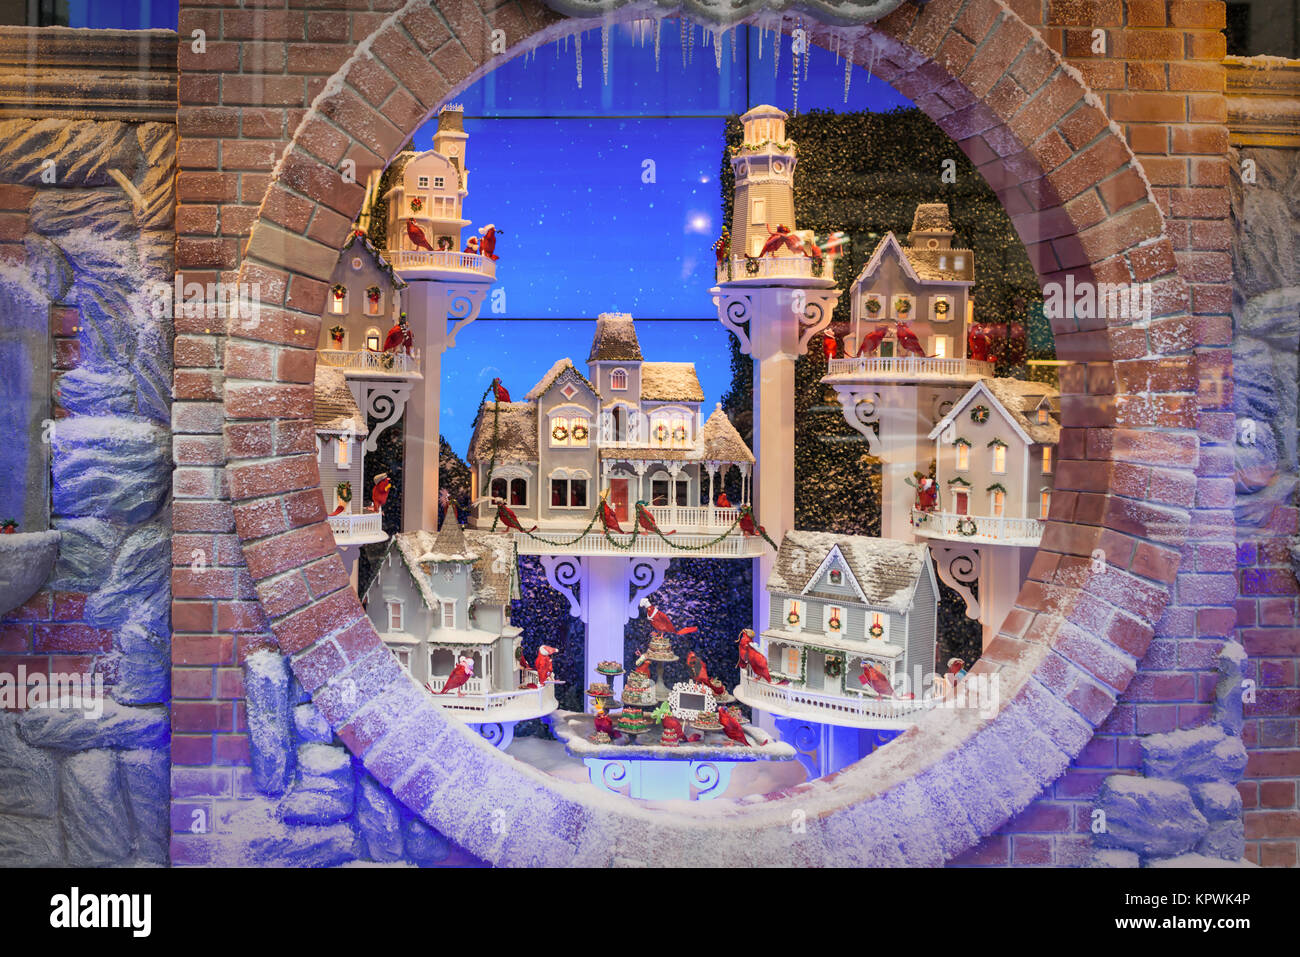 Weihnachten magische Atmosphäre hintergrund. Modernes Design Showcase für den Winterurlaub. Winter Gebäude mit strahlenden Lichtern geschmückt Stockfoto